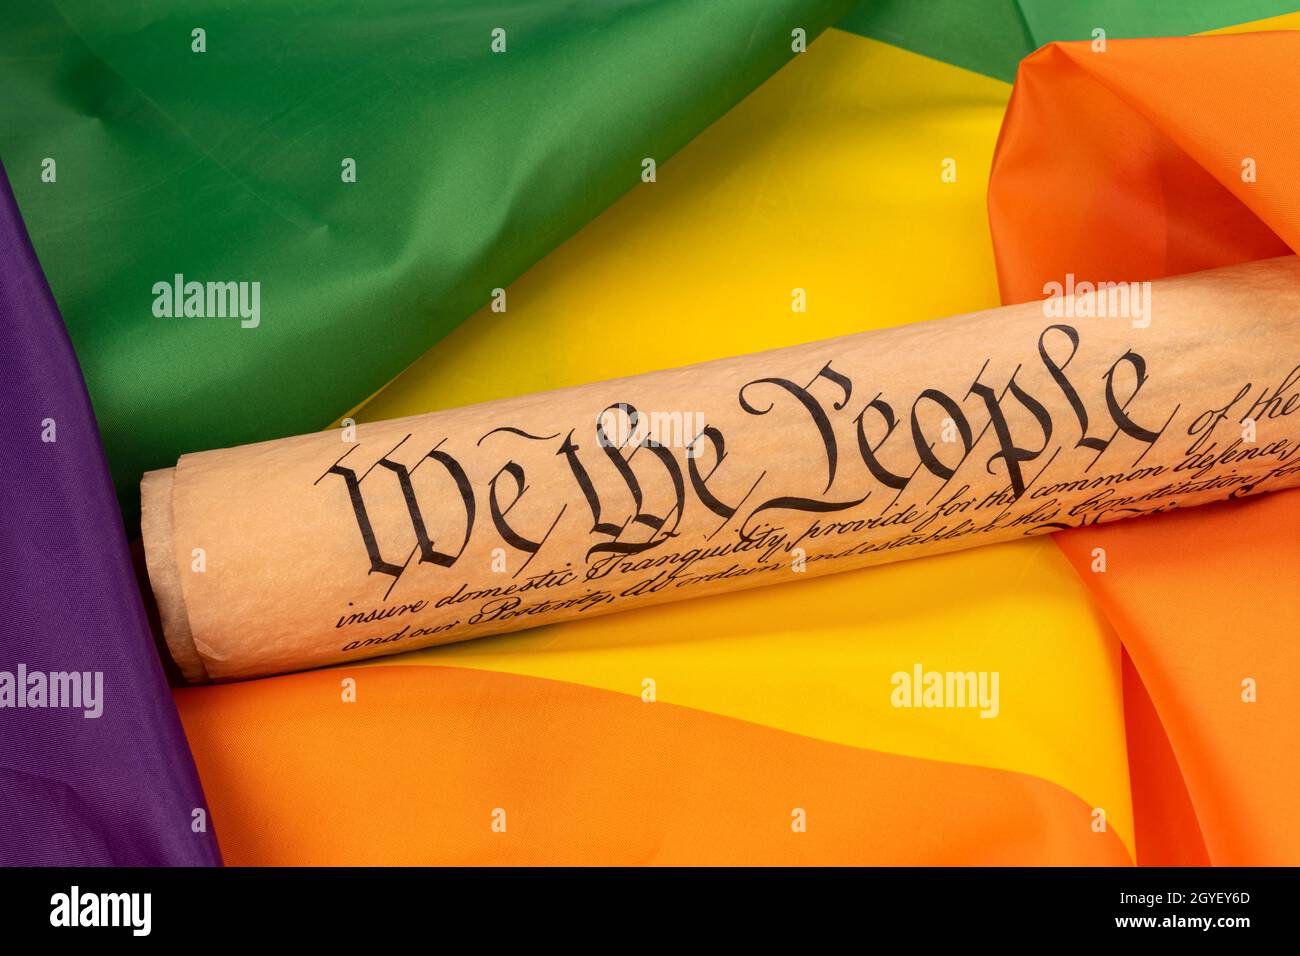 La constitución de Estados Unidos, insinuando leyes y libertad, descansa sobre una porción de una bandera arcoiris, destacando la igualdad de derechos entre grupos con diferentes sexu Foto de stock